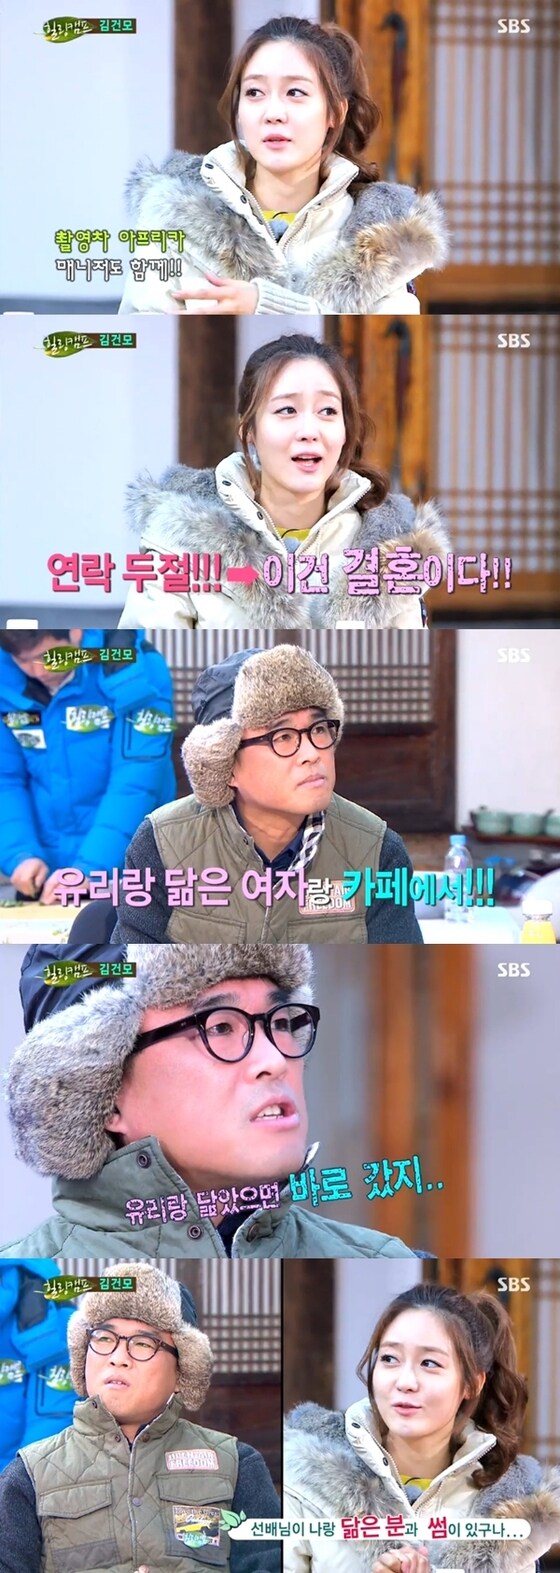 김건모, 성유리가 얽힌 과거 극비 결혼 루머에 대해 밝혀졌다. © News1스포츠 / SBS ´힐링캠프, 기쁘지 아니한가´ 캡처